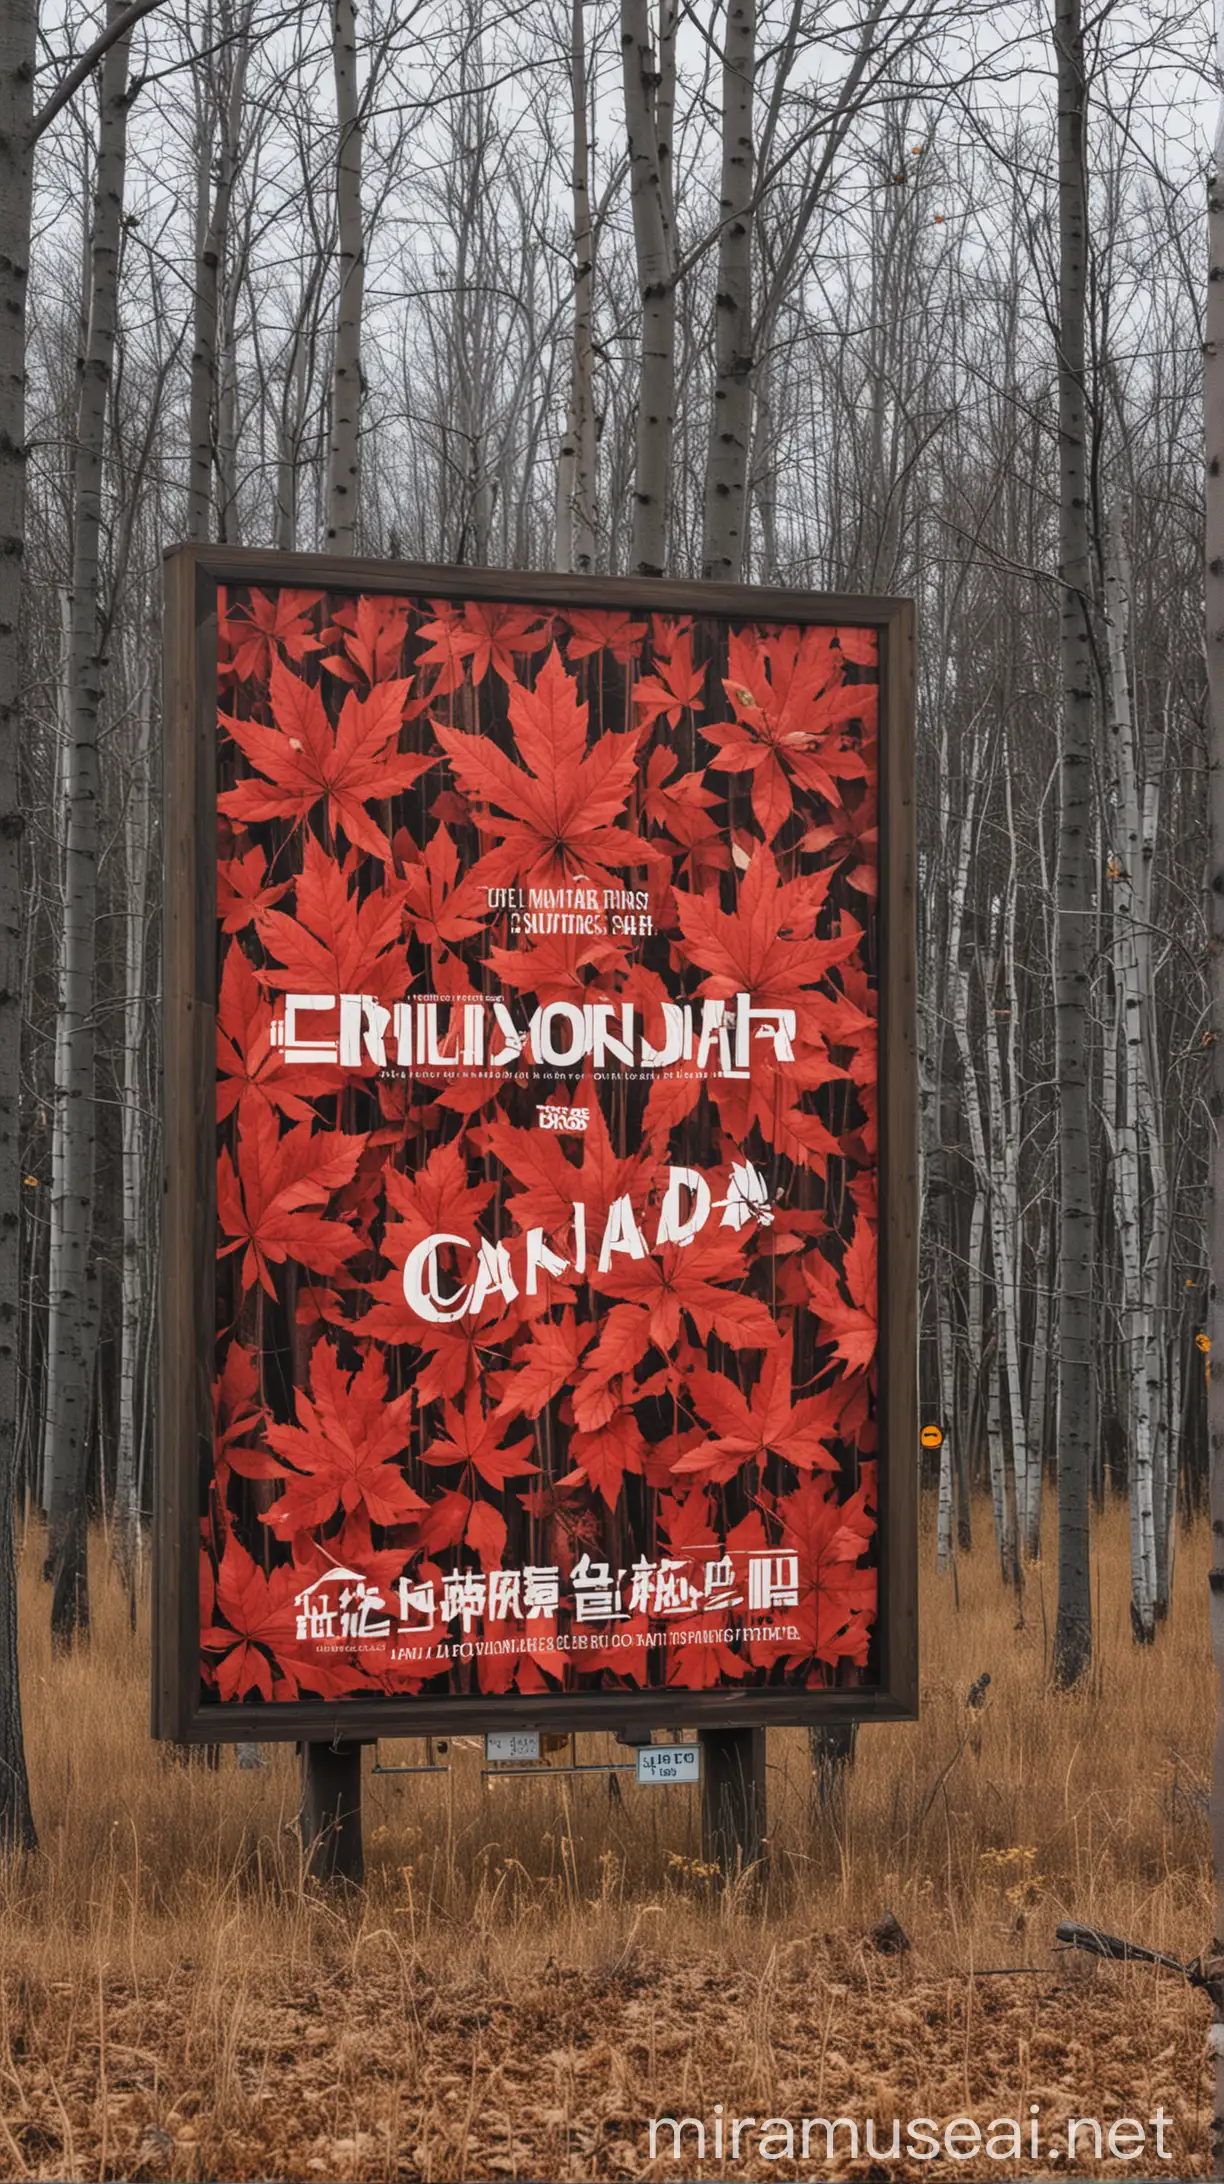 billboard for canada in nature